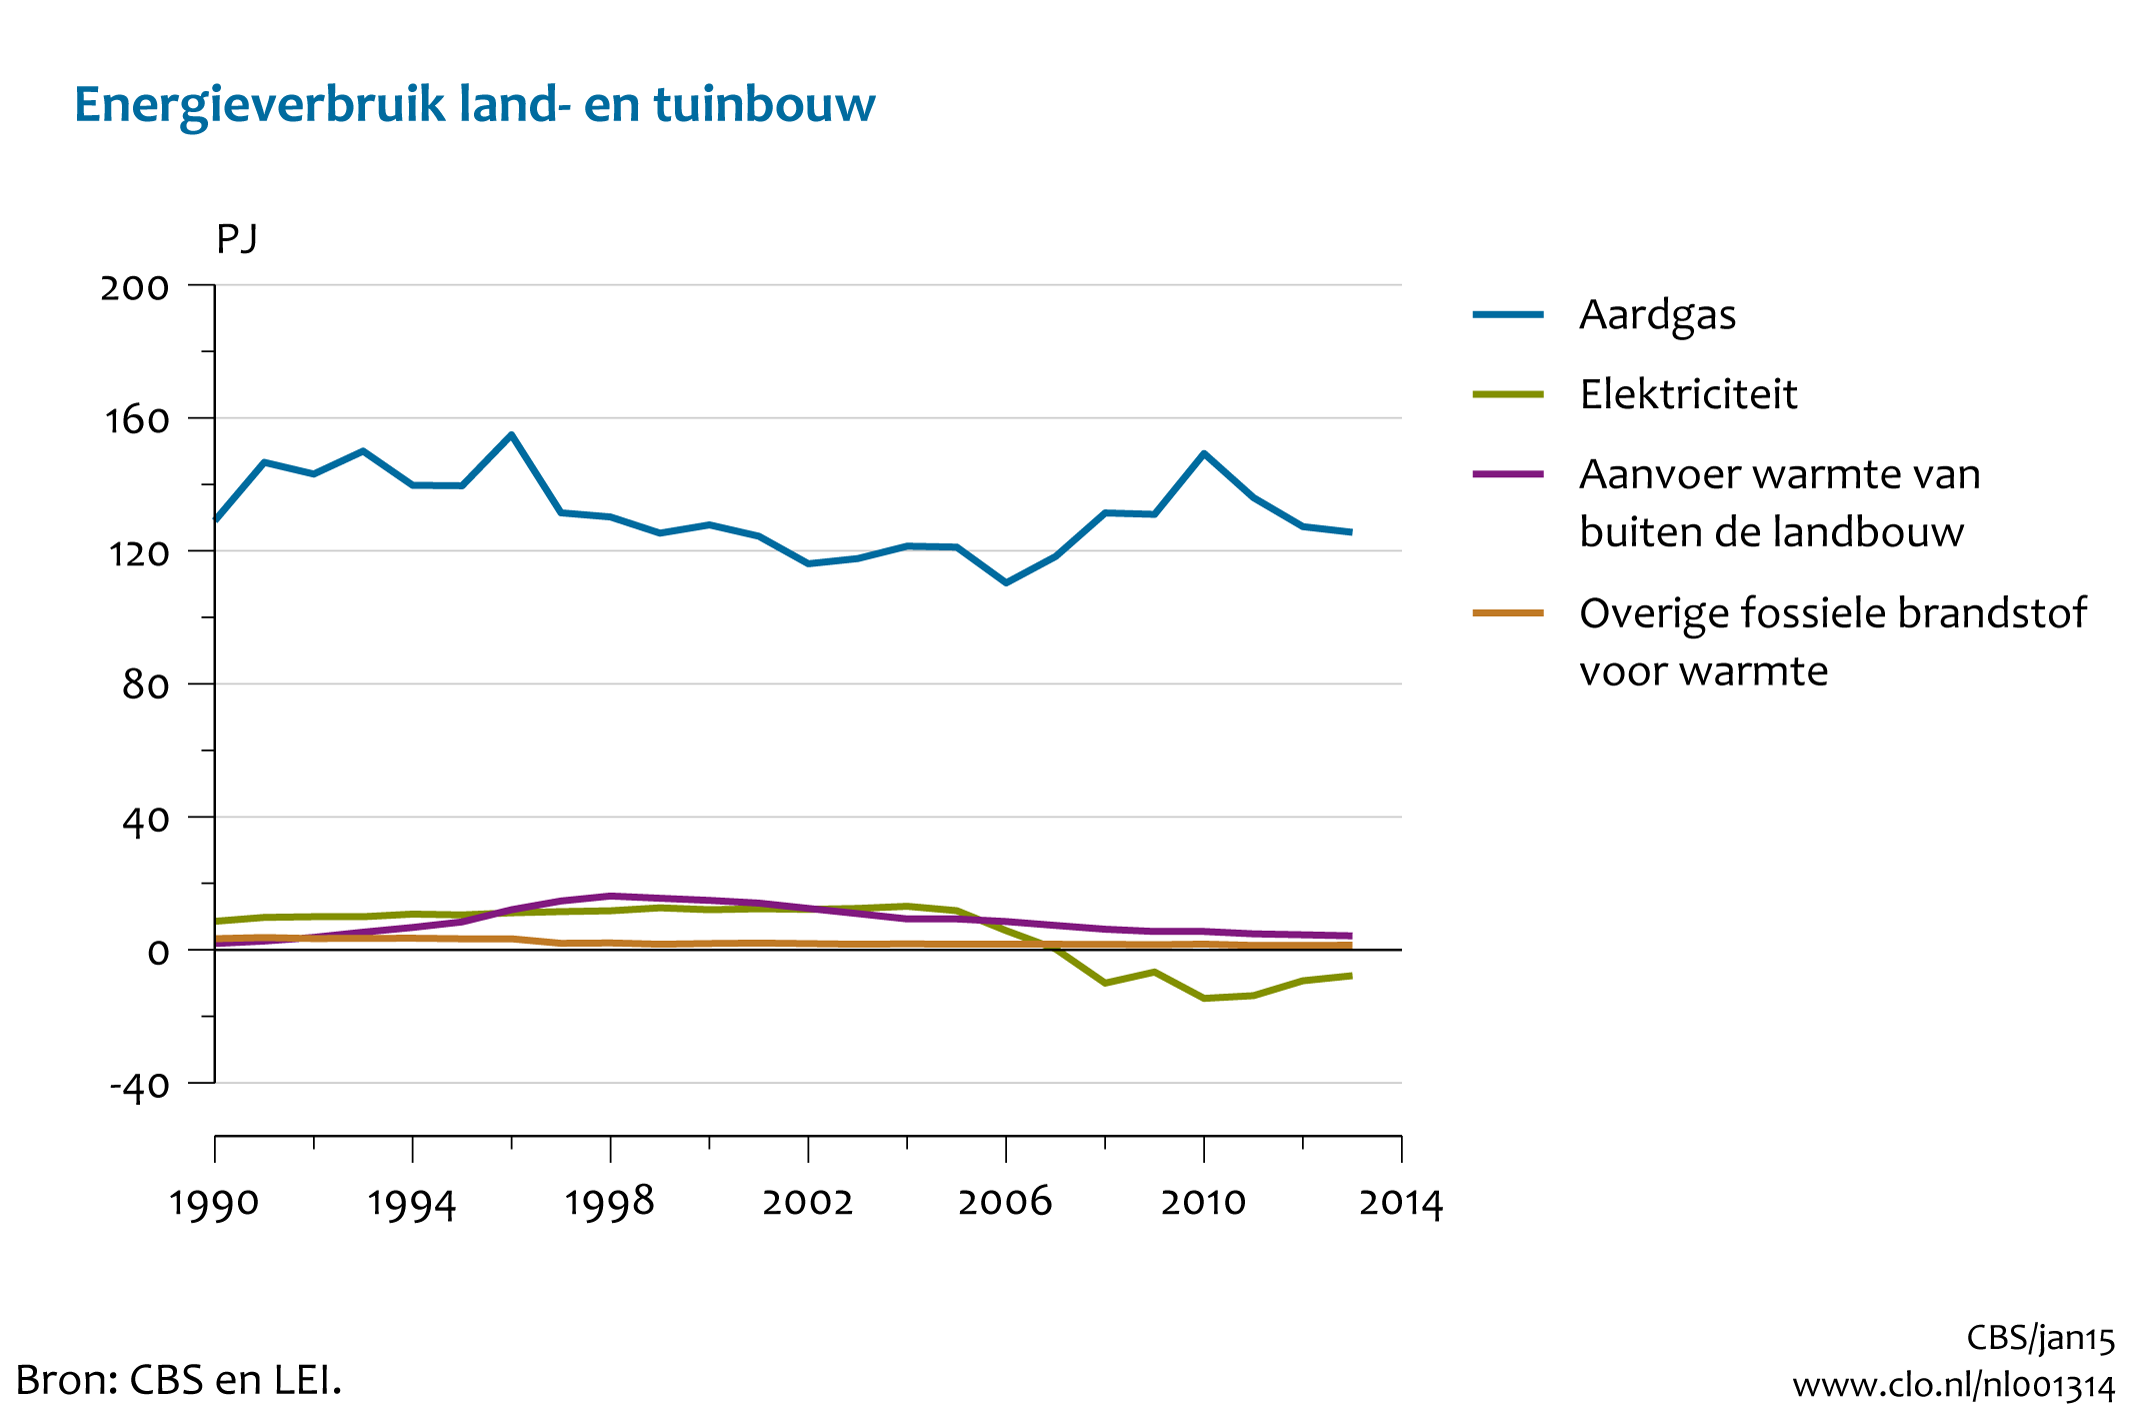 Figuur energieverbruik land- en tuinbouw 1990-2013*. In de rest van de tekst wordt deze figuur uitgebreider uitgelegd.